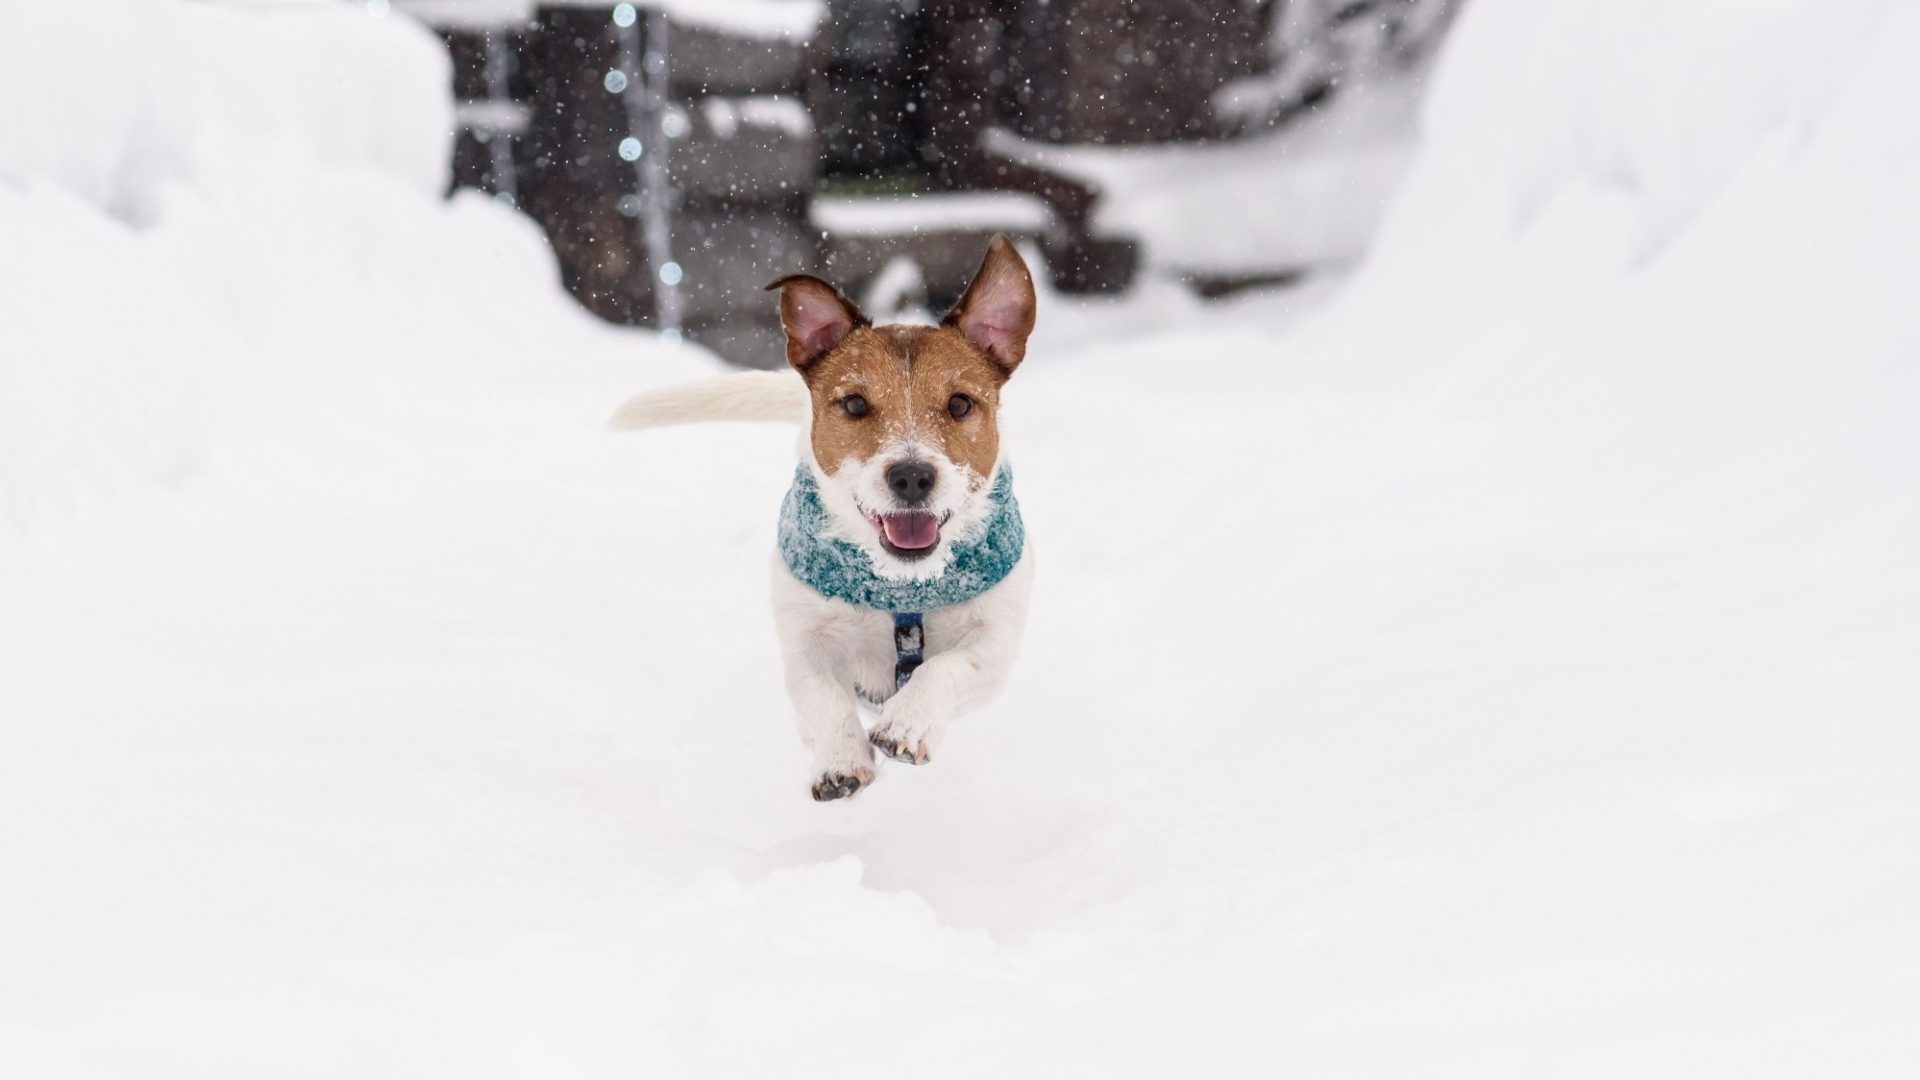 Brauchen Hunde im Winter einen Mantel? Frieren Katzenpfoten bei Minusgraden? Wie gefährlich ist Streusalz? Mehr dazu in den Winter-Wohlfühltipps.